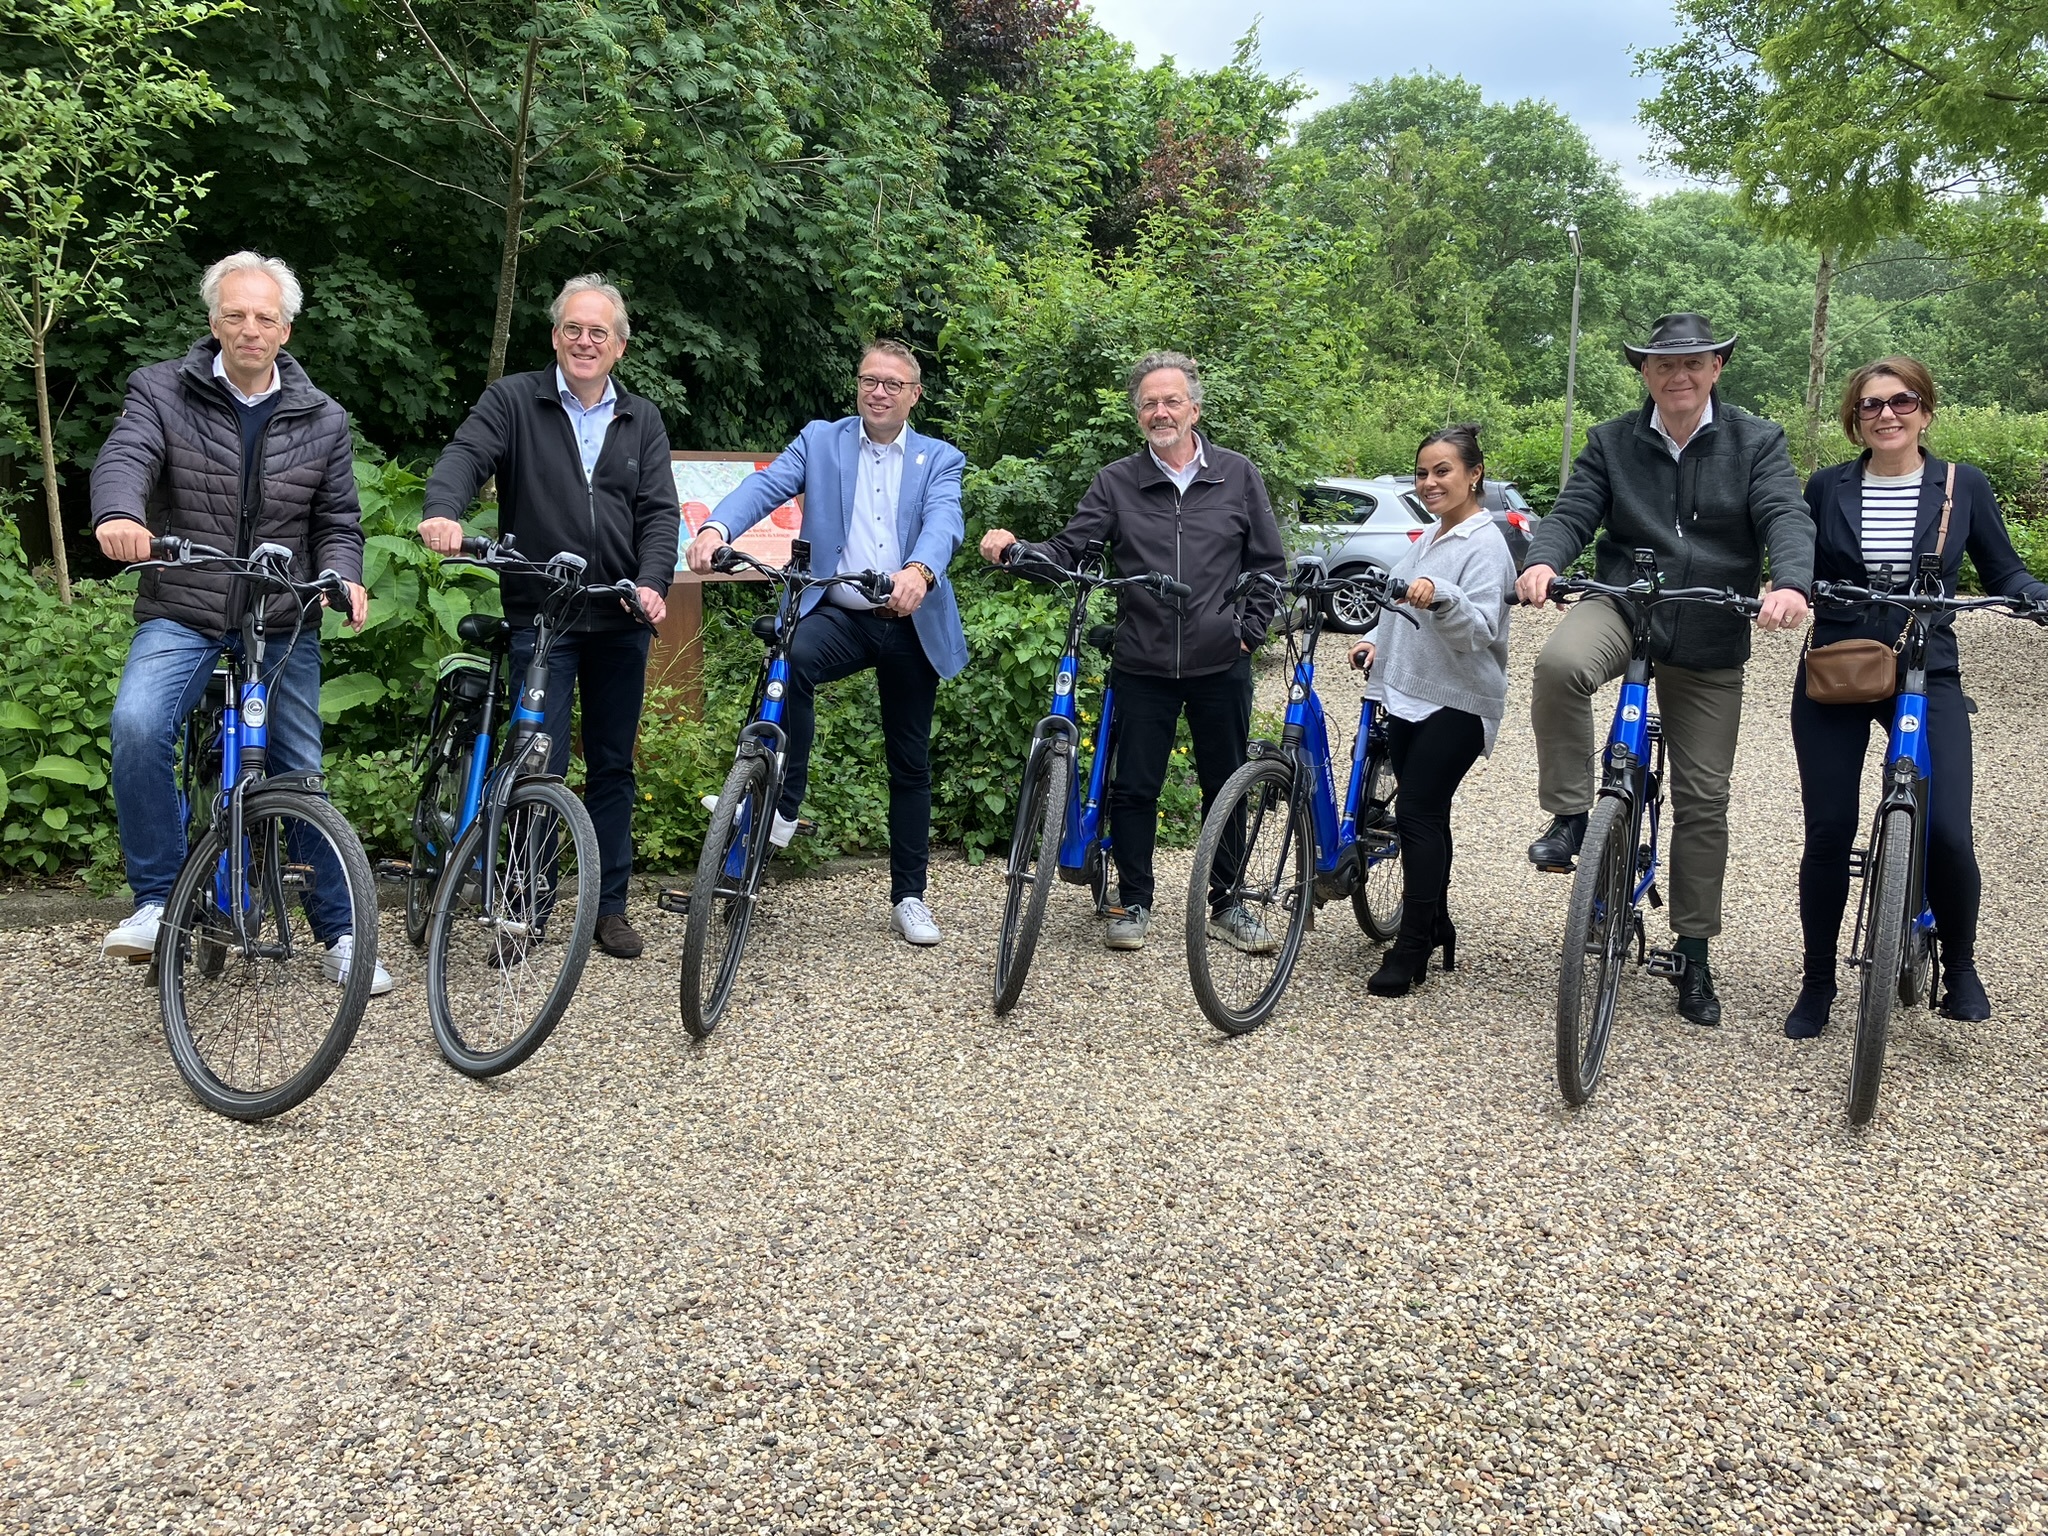 Alle leden van het college van de gemeente Vijfheerenlanden startklaar om de jubileumfietstocht te fietsen